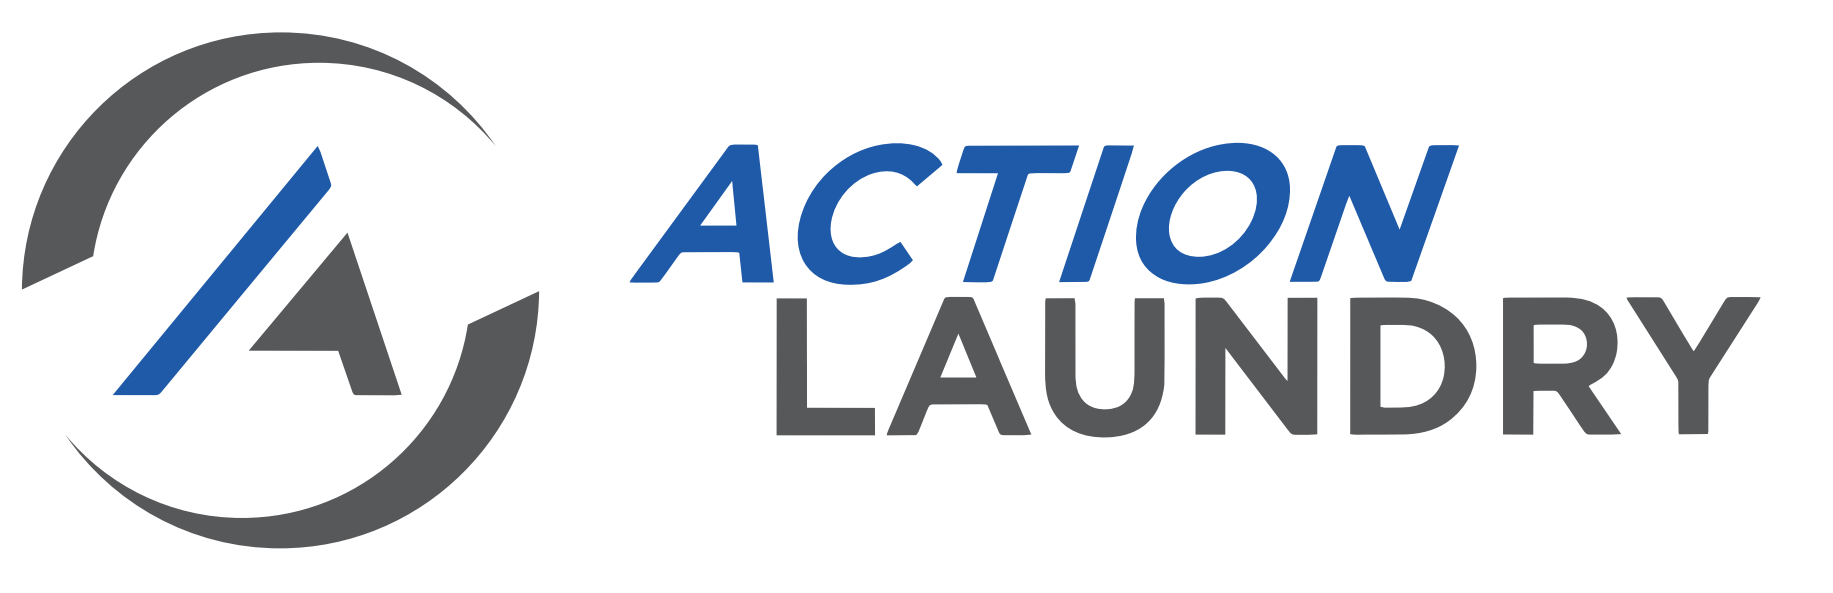 Action Laundry Logo